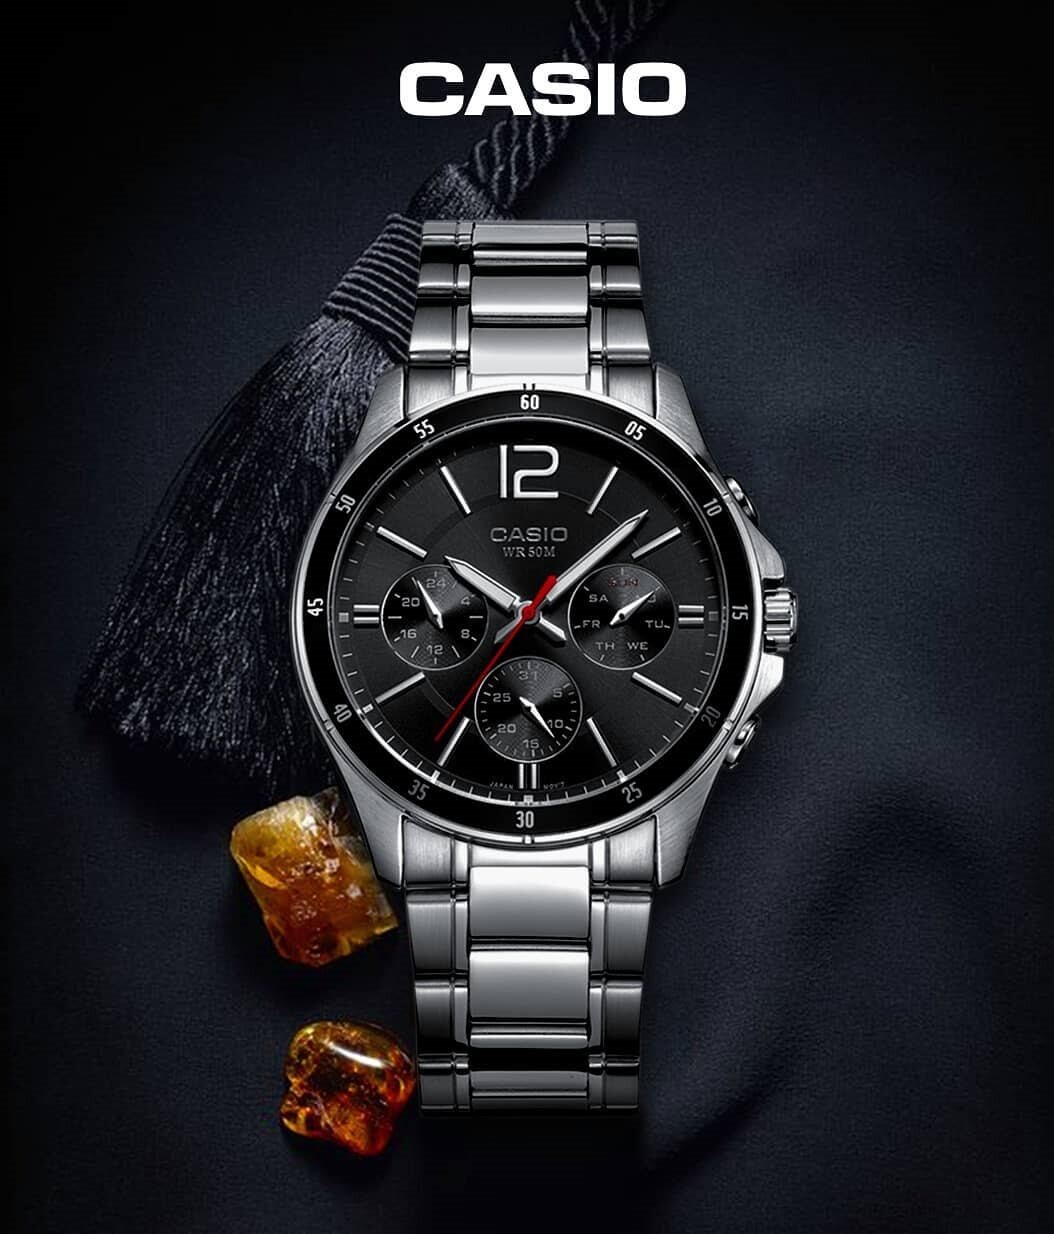 มุมมองเพิ่มเติมของสินค้า Win Watch Shop Casio Standard นาฬิกาผู้ชาย สายสเตนเลส รุ่น MTP-1374D-1AVDF -มั่นใจ สินค้าของแท้ 100% รับประกันสินค้า 1 ปี (สินค้าขายดีสุดๆ)